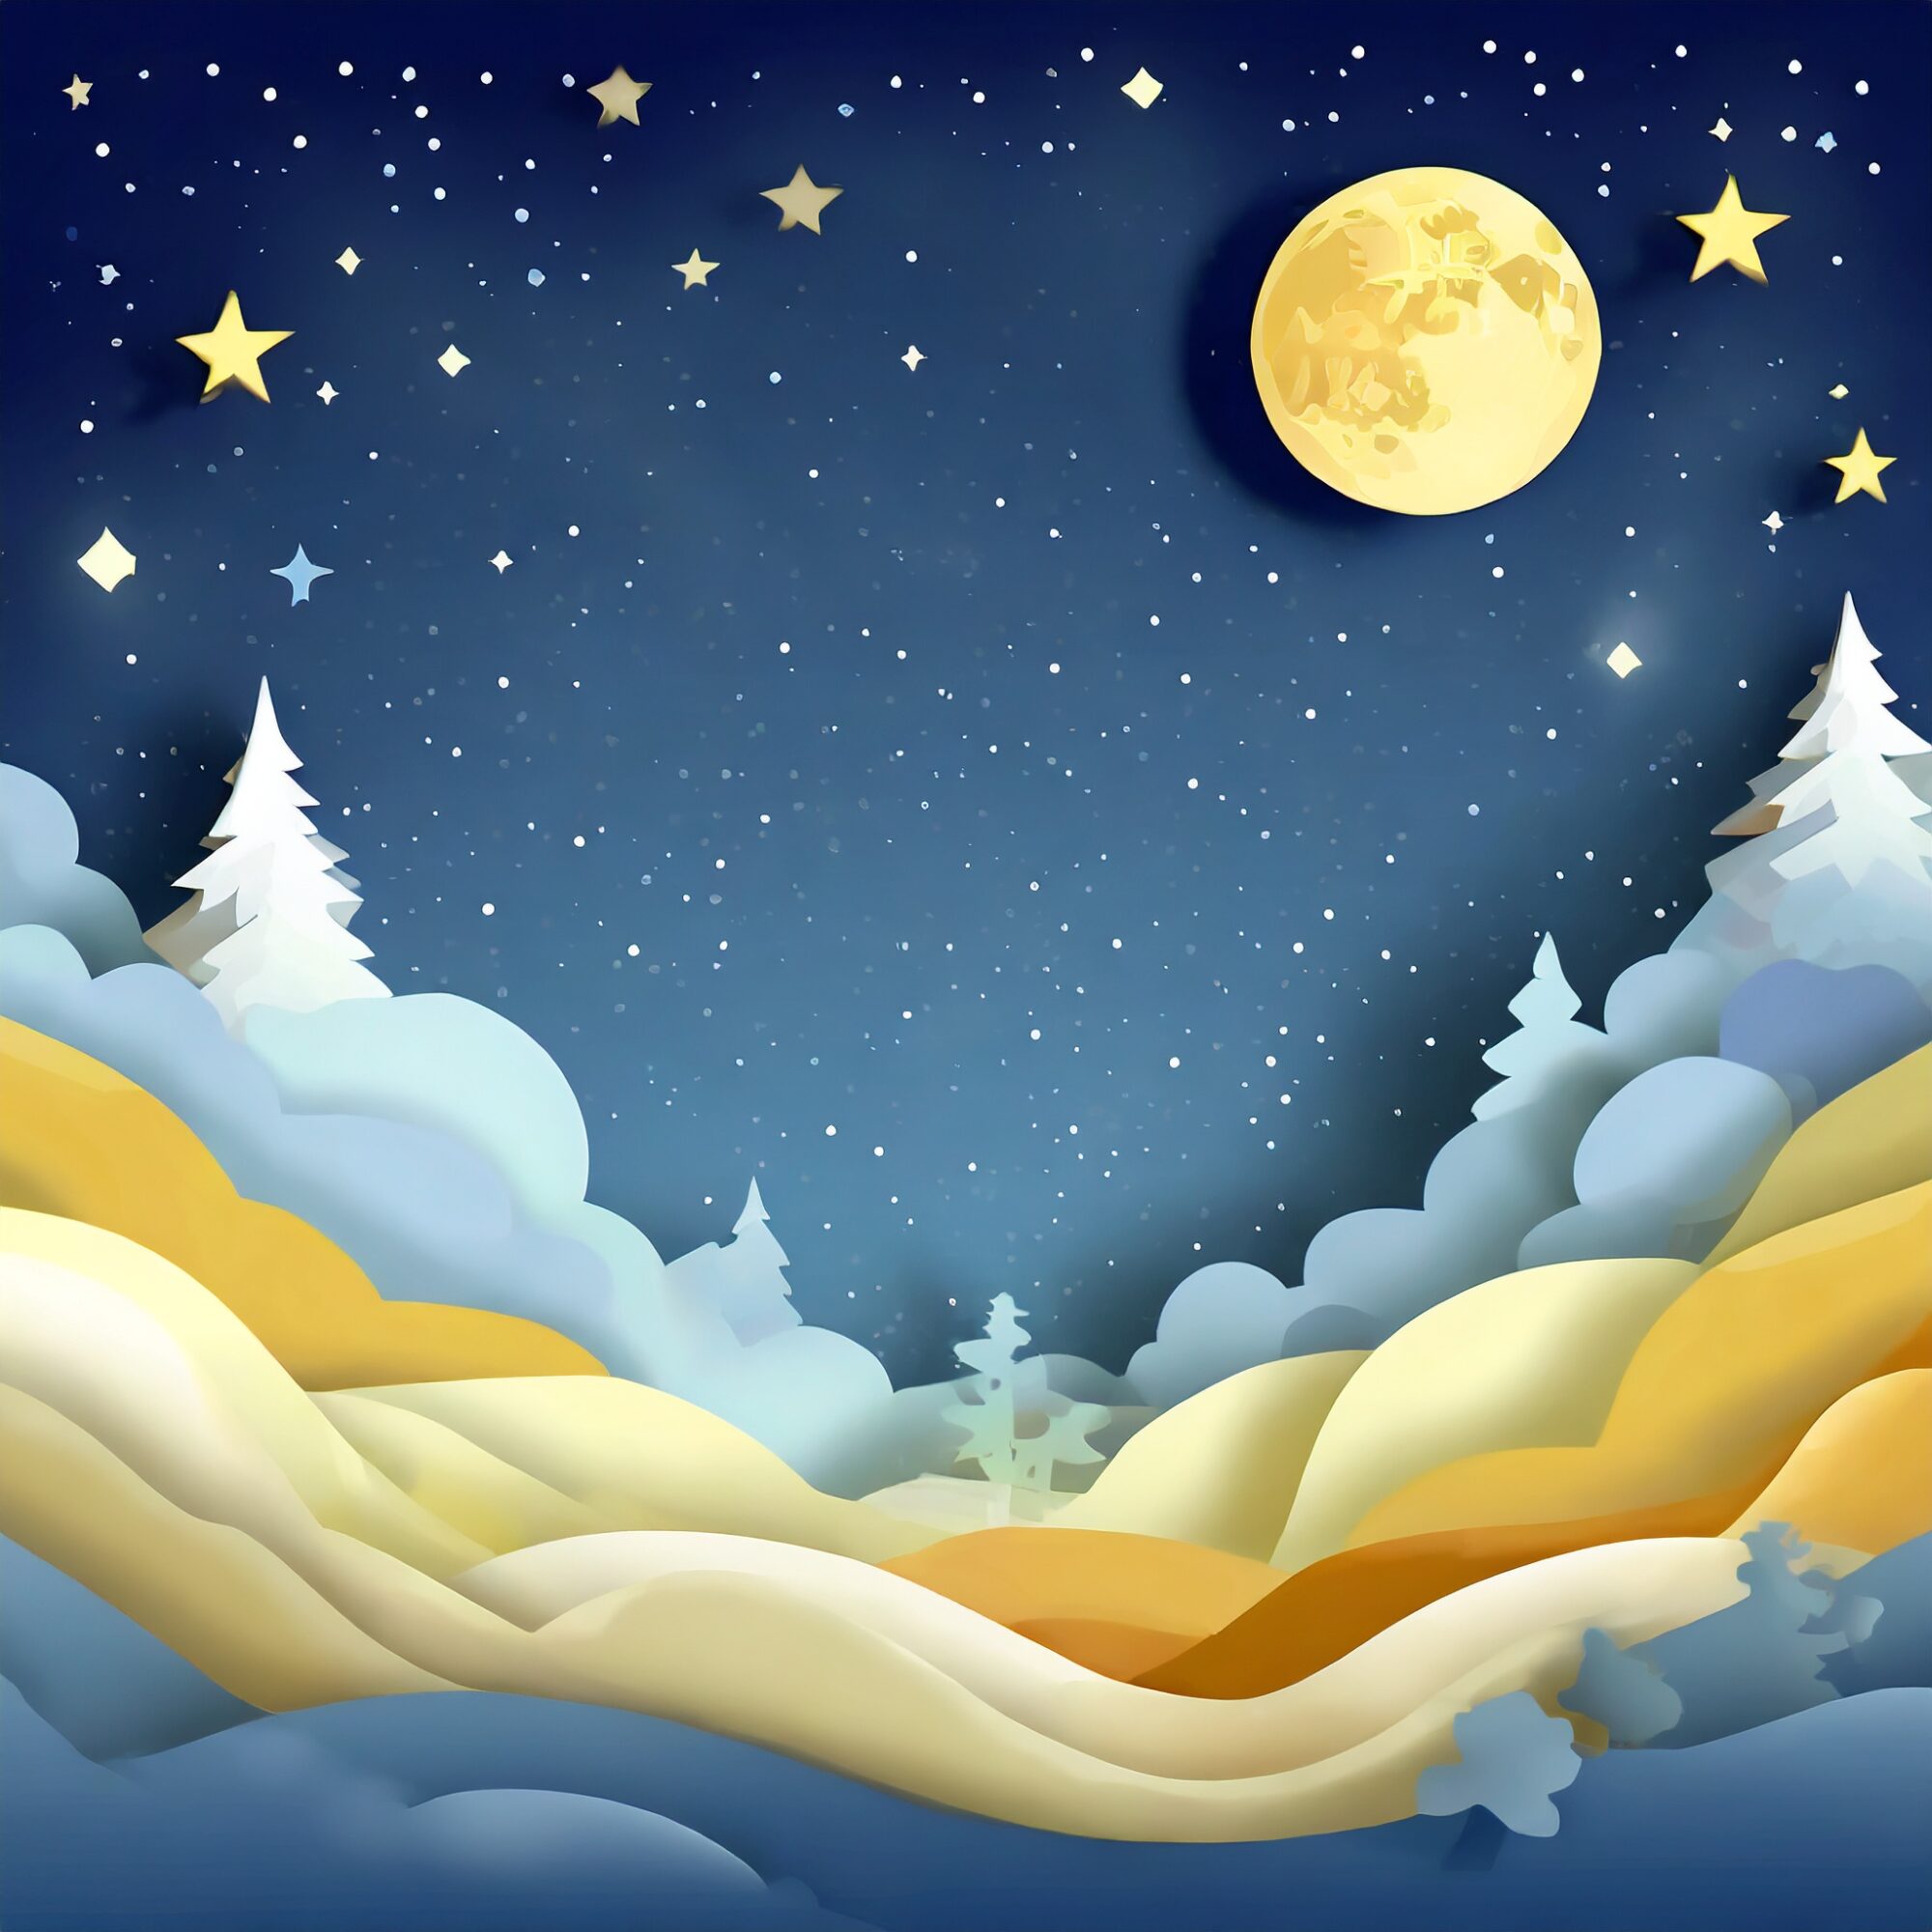 星と月の夜の背景素材